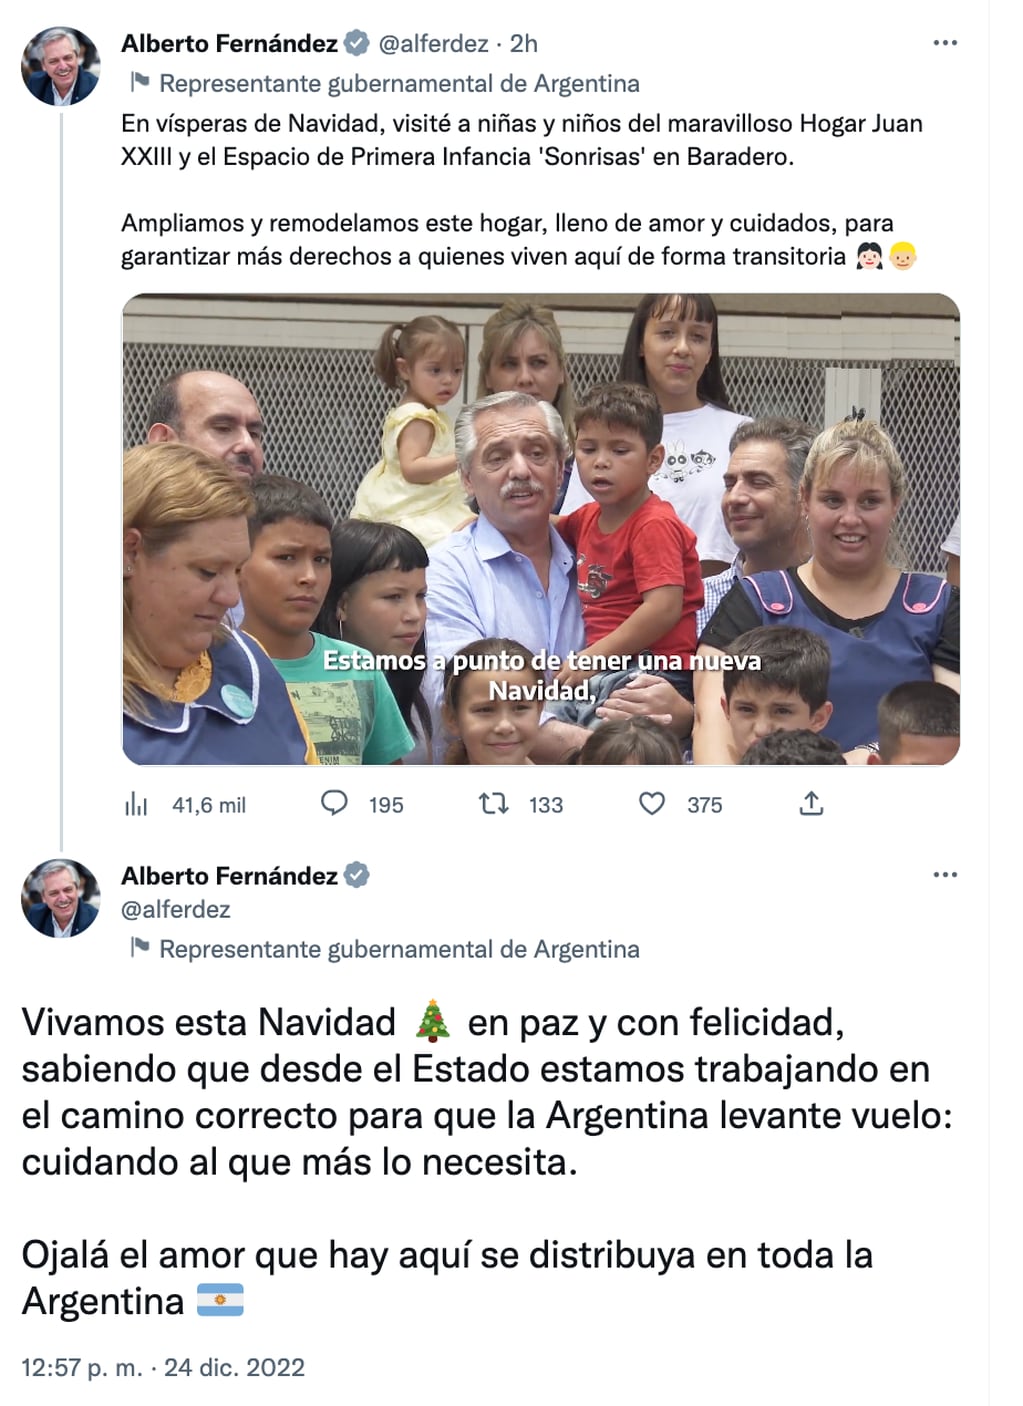 El presidente Alberto Fernández compartió un mensaje de Navidad a través de su cuenta de Twitter.